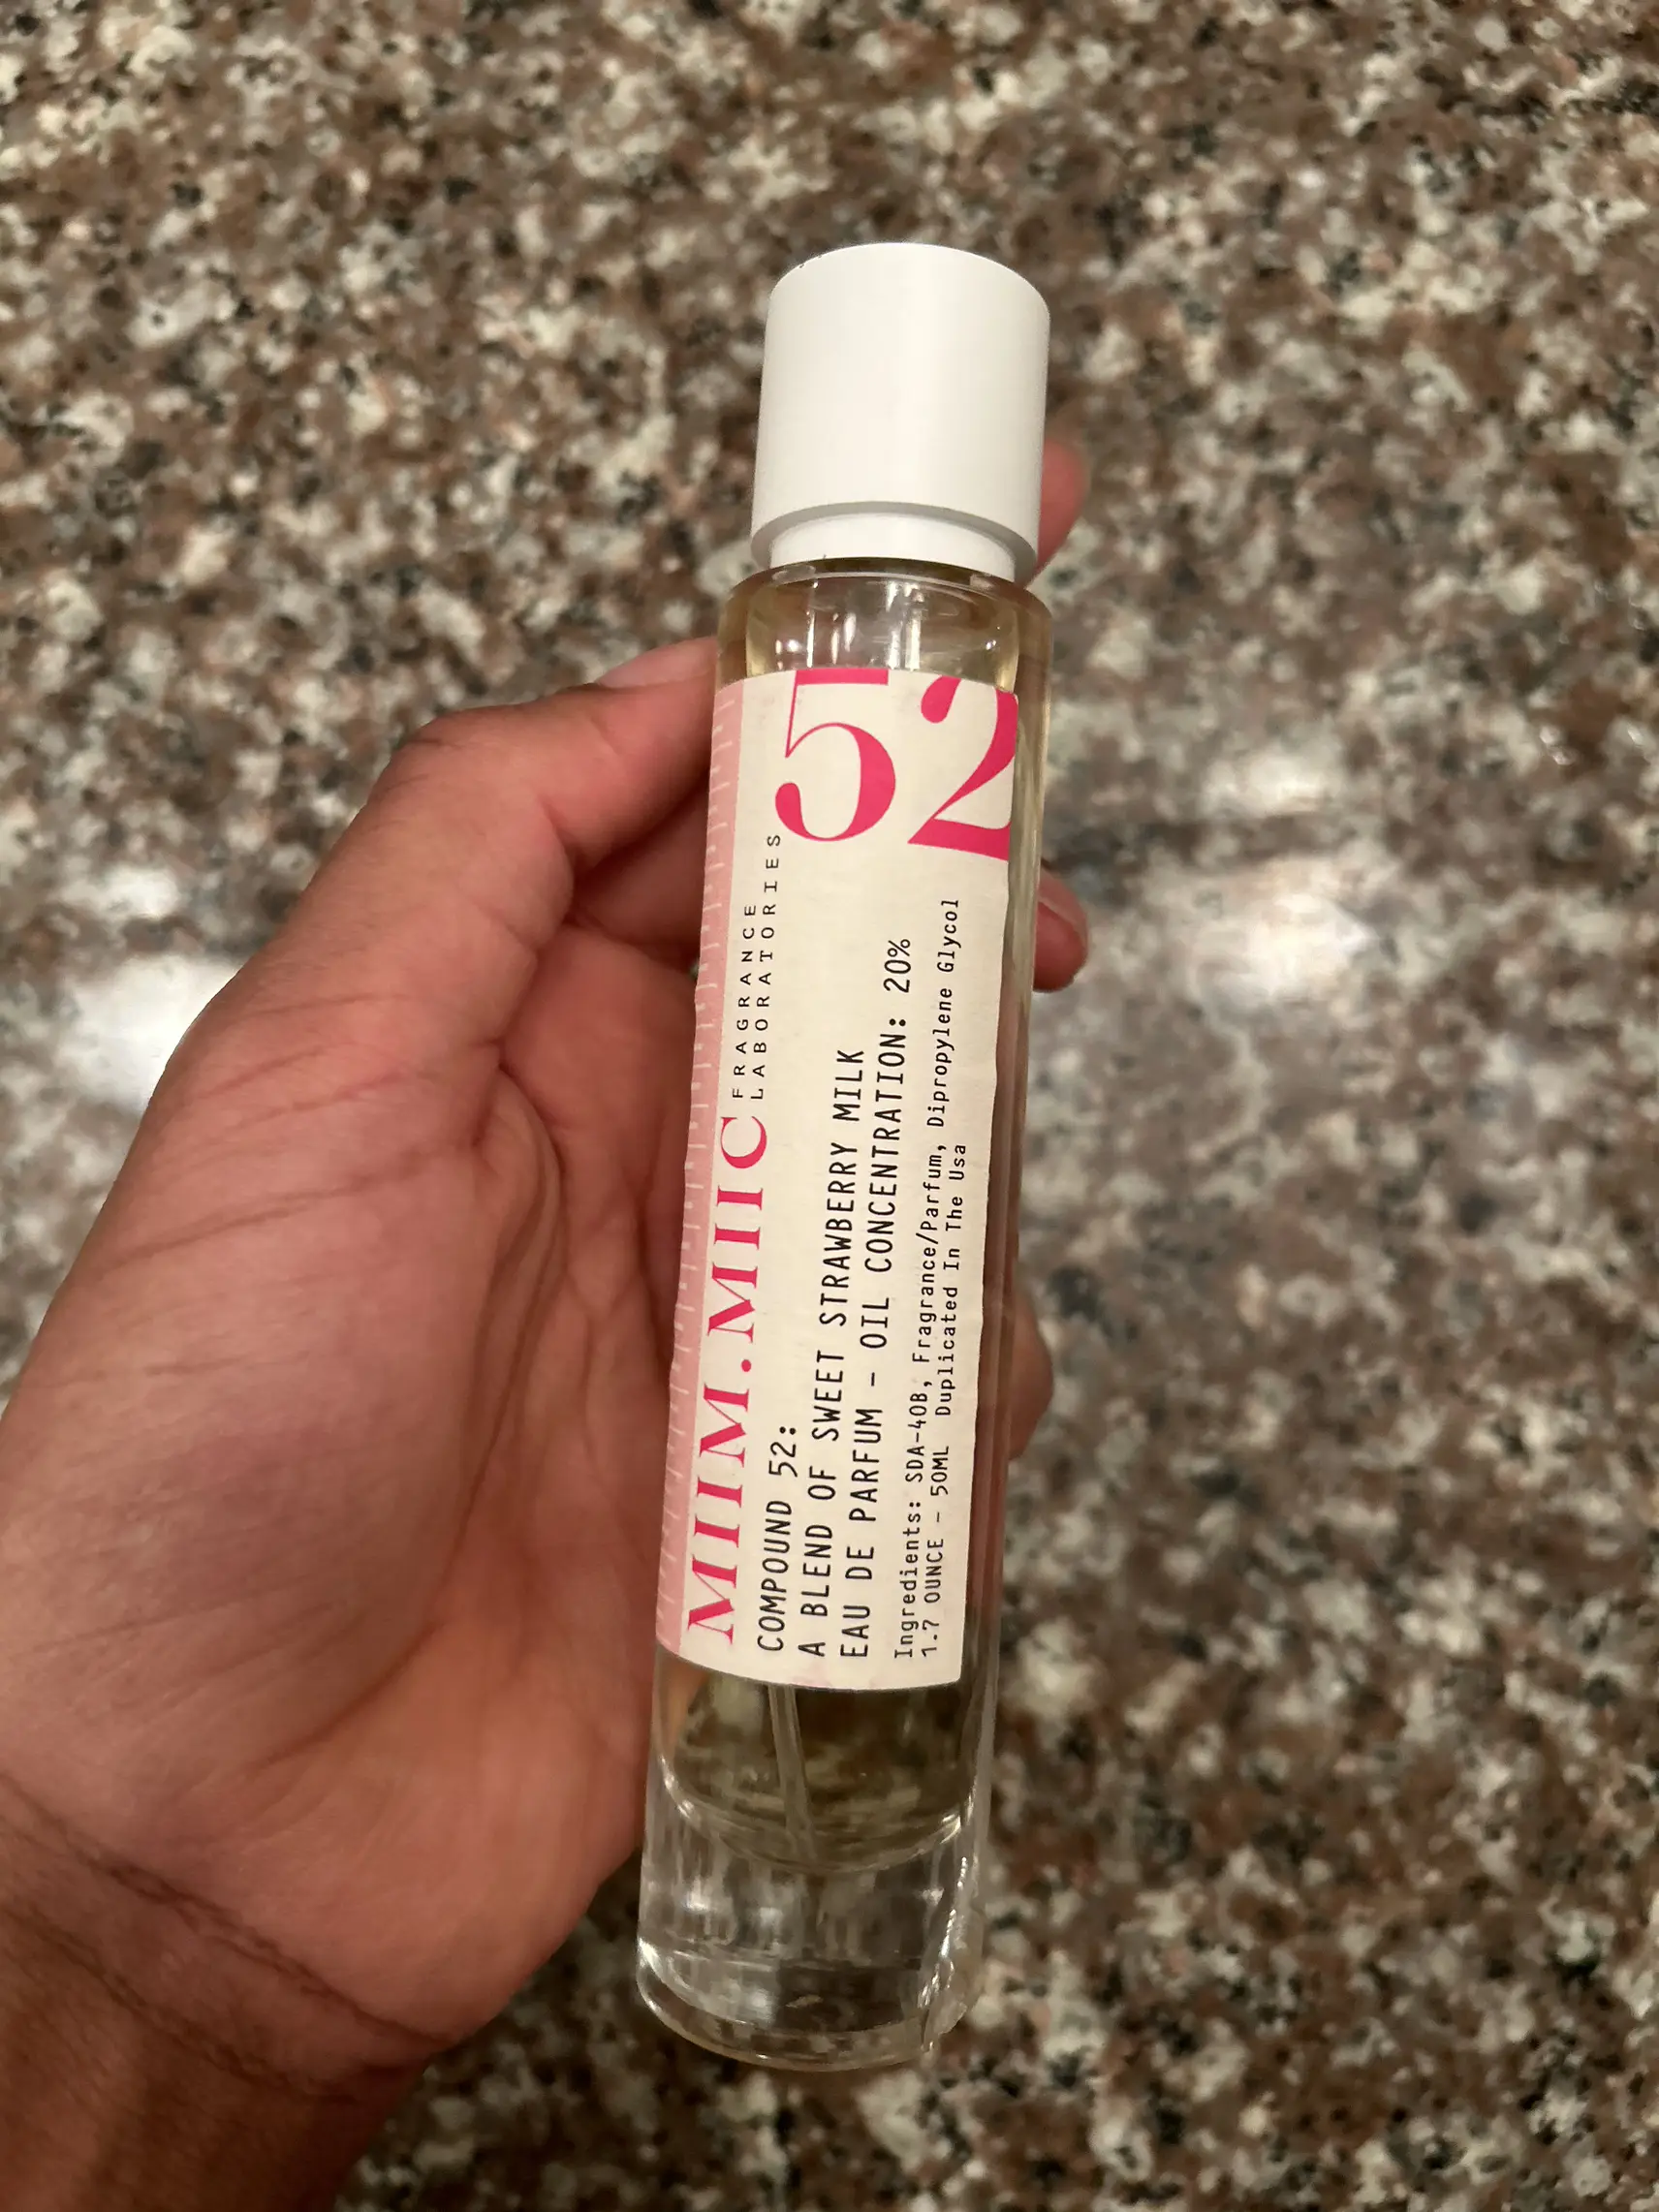 Coffee Fragrance Oils /2.02fl.oz For Perfume Aromatherapy - Temu